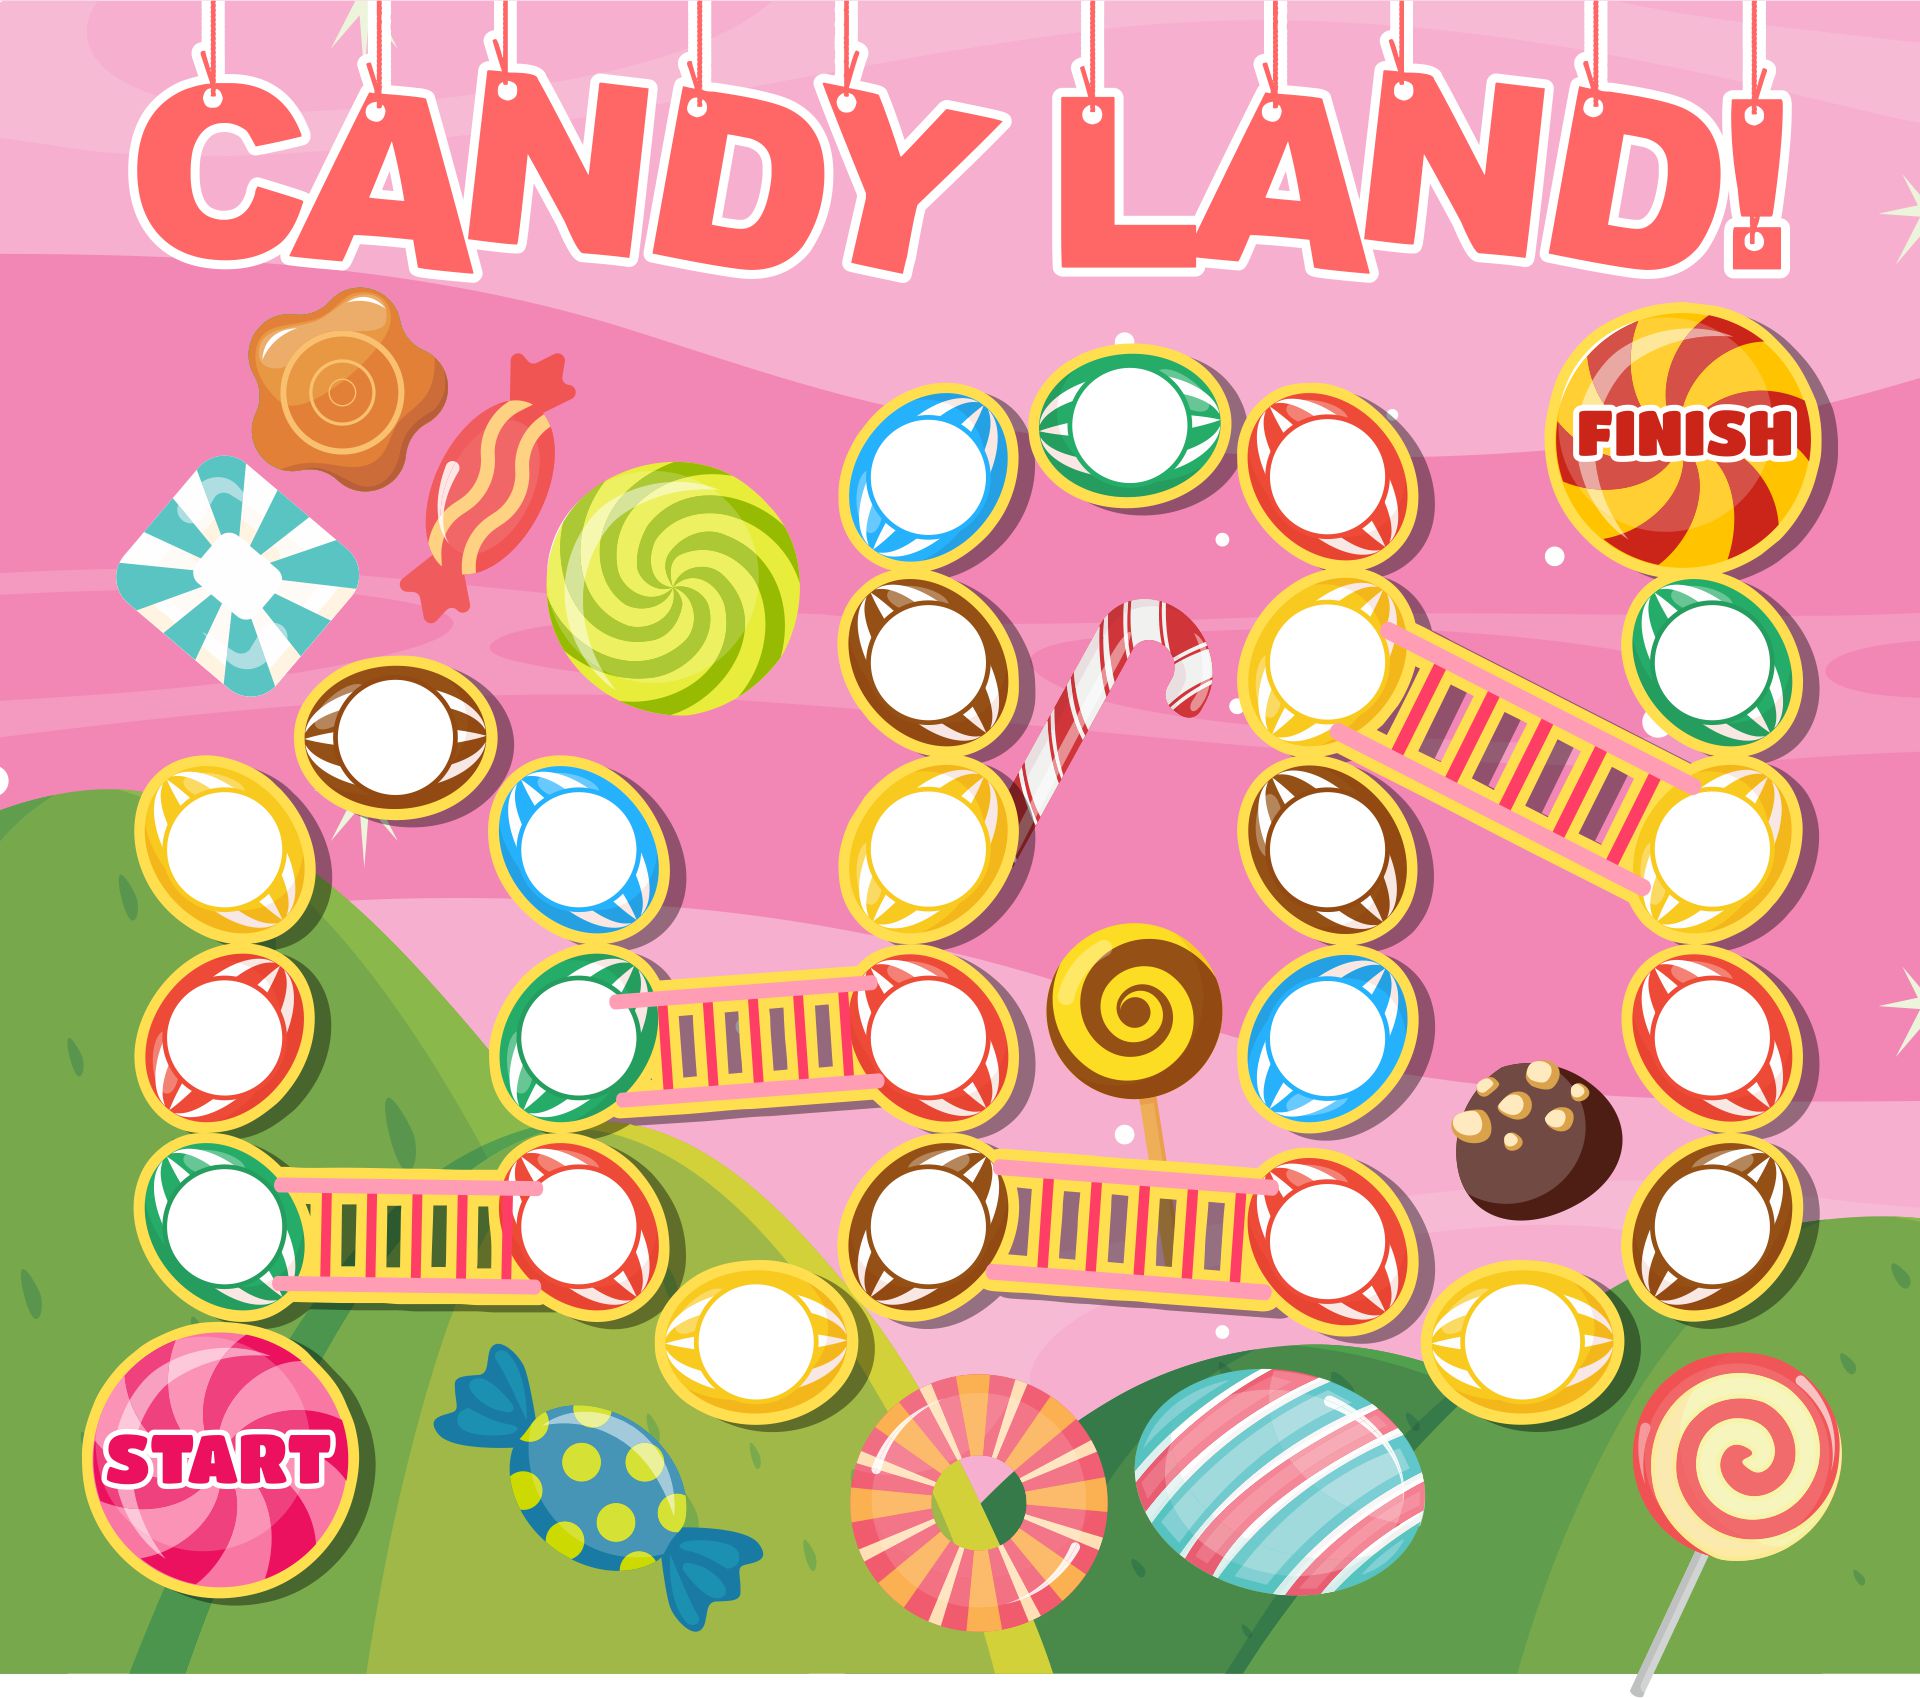 4 Best Images of Printable Candyland Board Game Candyland Game Board